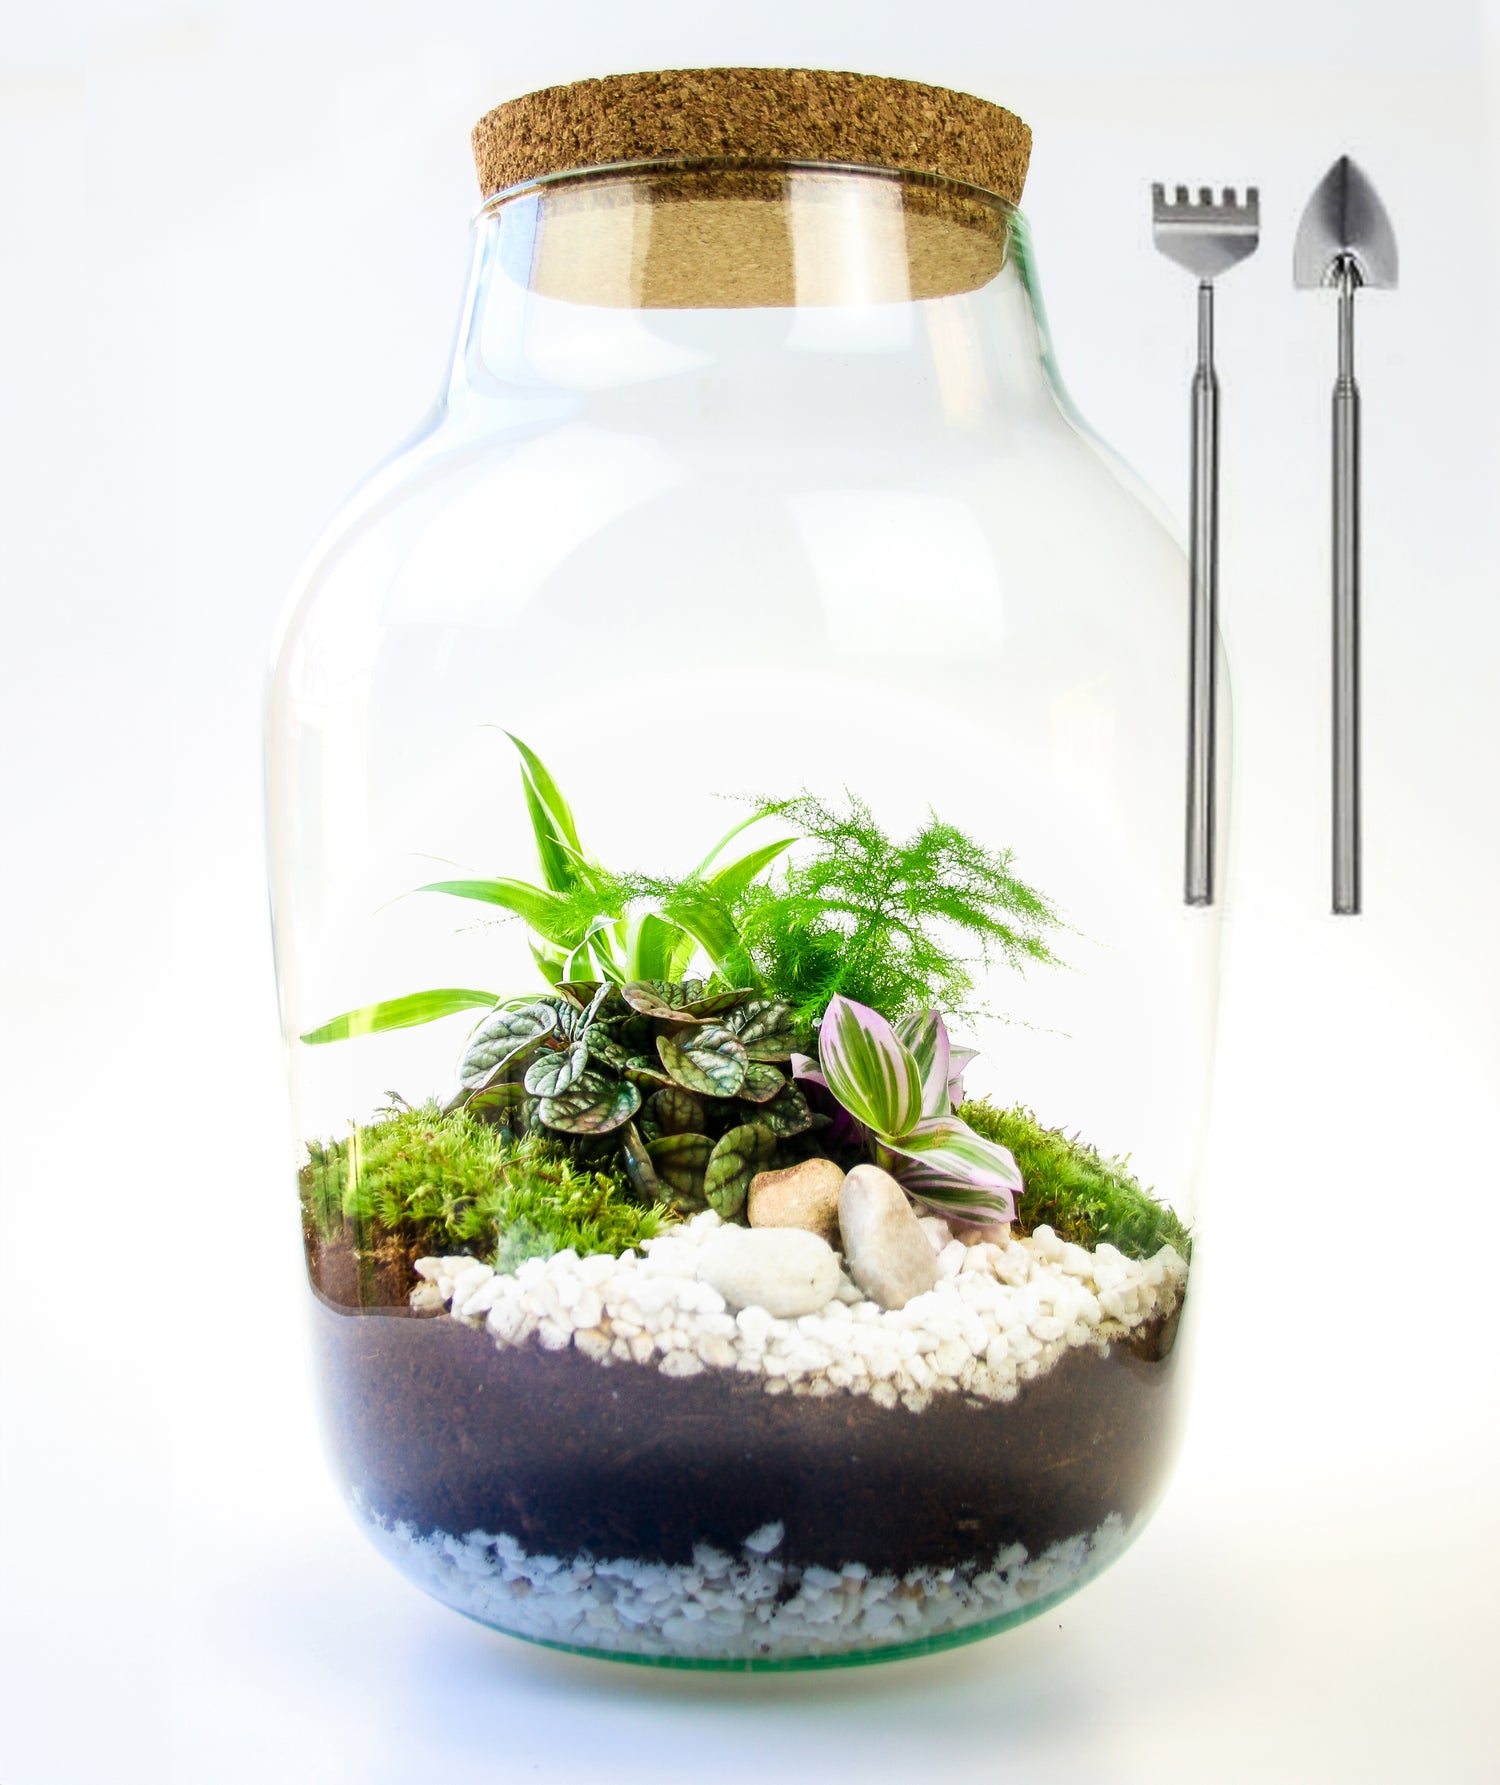 Terrarium kit with glass jar and tool set